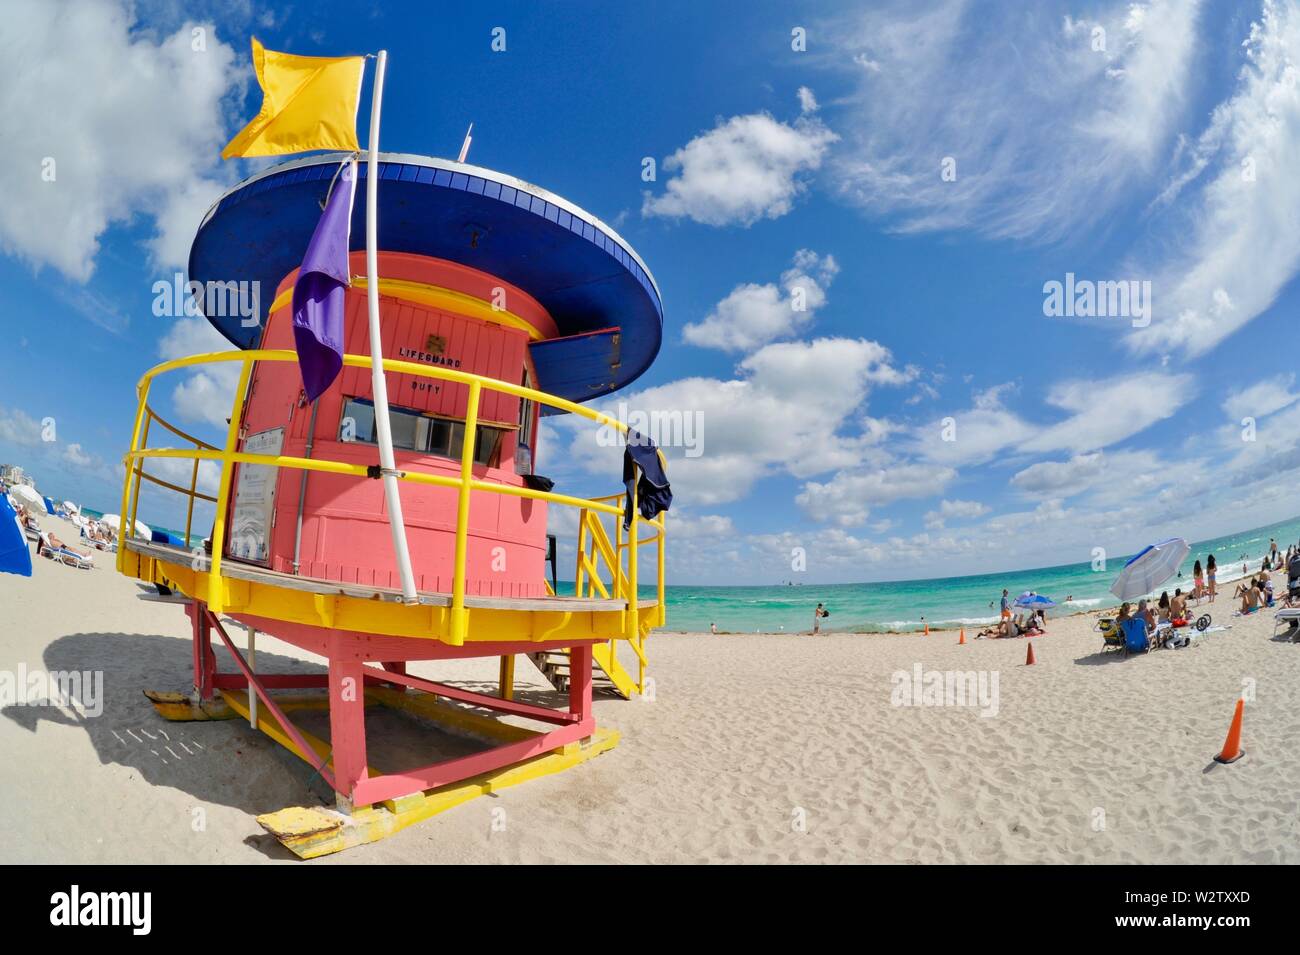 Station de sauvetage de couleur structure tour de style art déco sur la populaire plage de sable blanc de South Beach, Miami, Floride, USA Banque D'Images